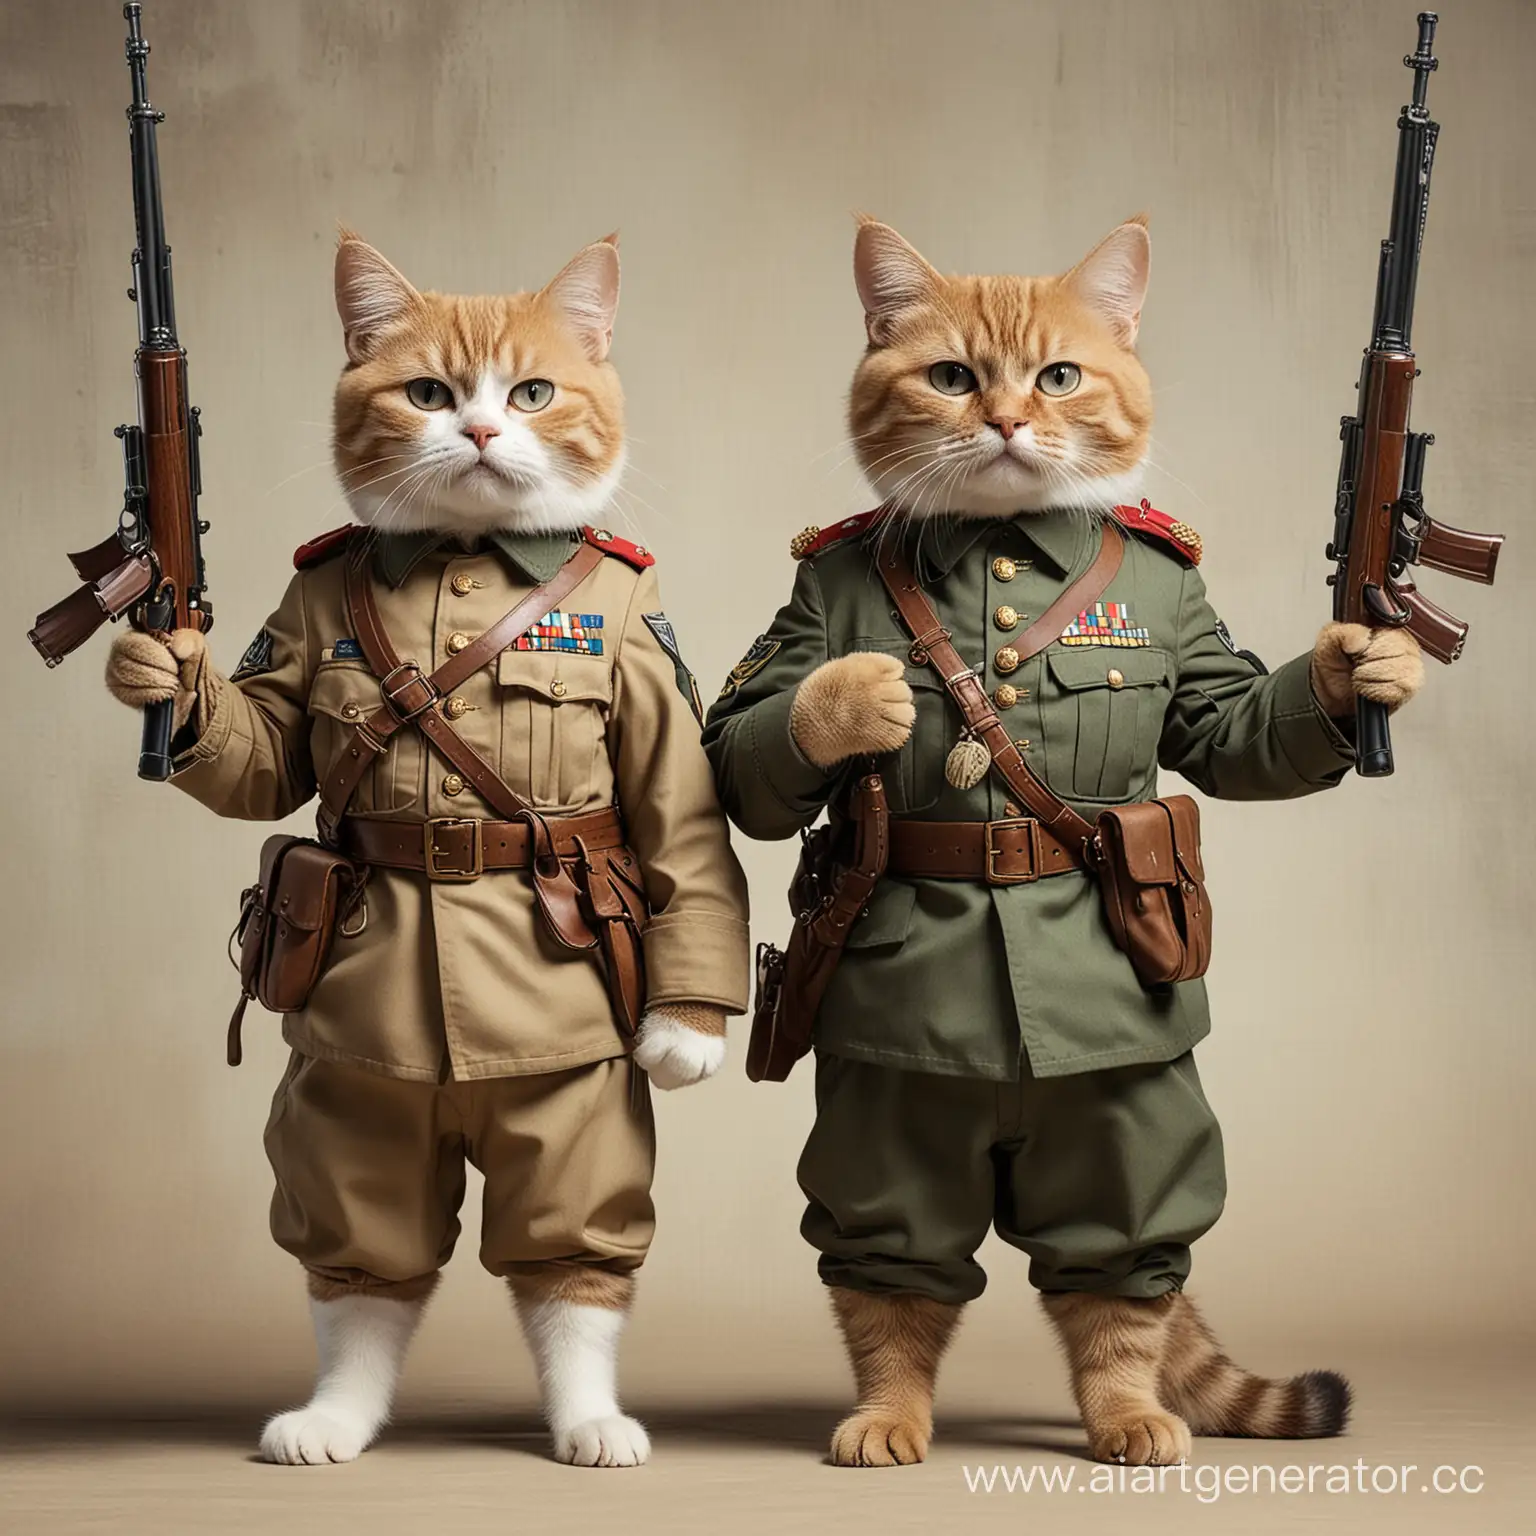 два кота в военной форме с автоматом в руках стоят спой друг к другу